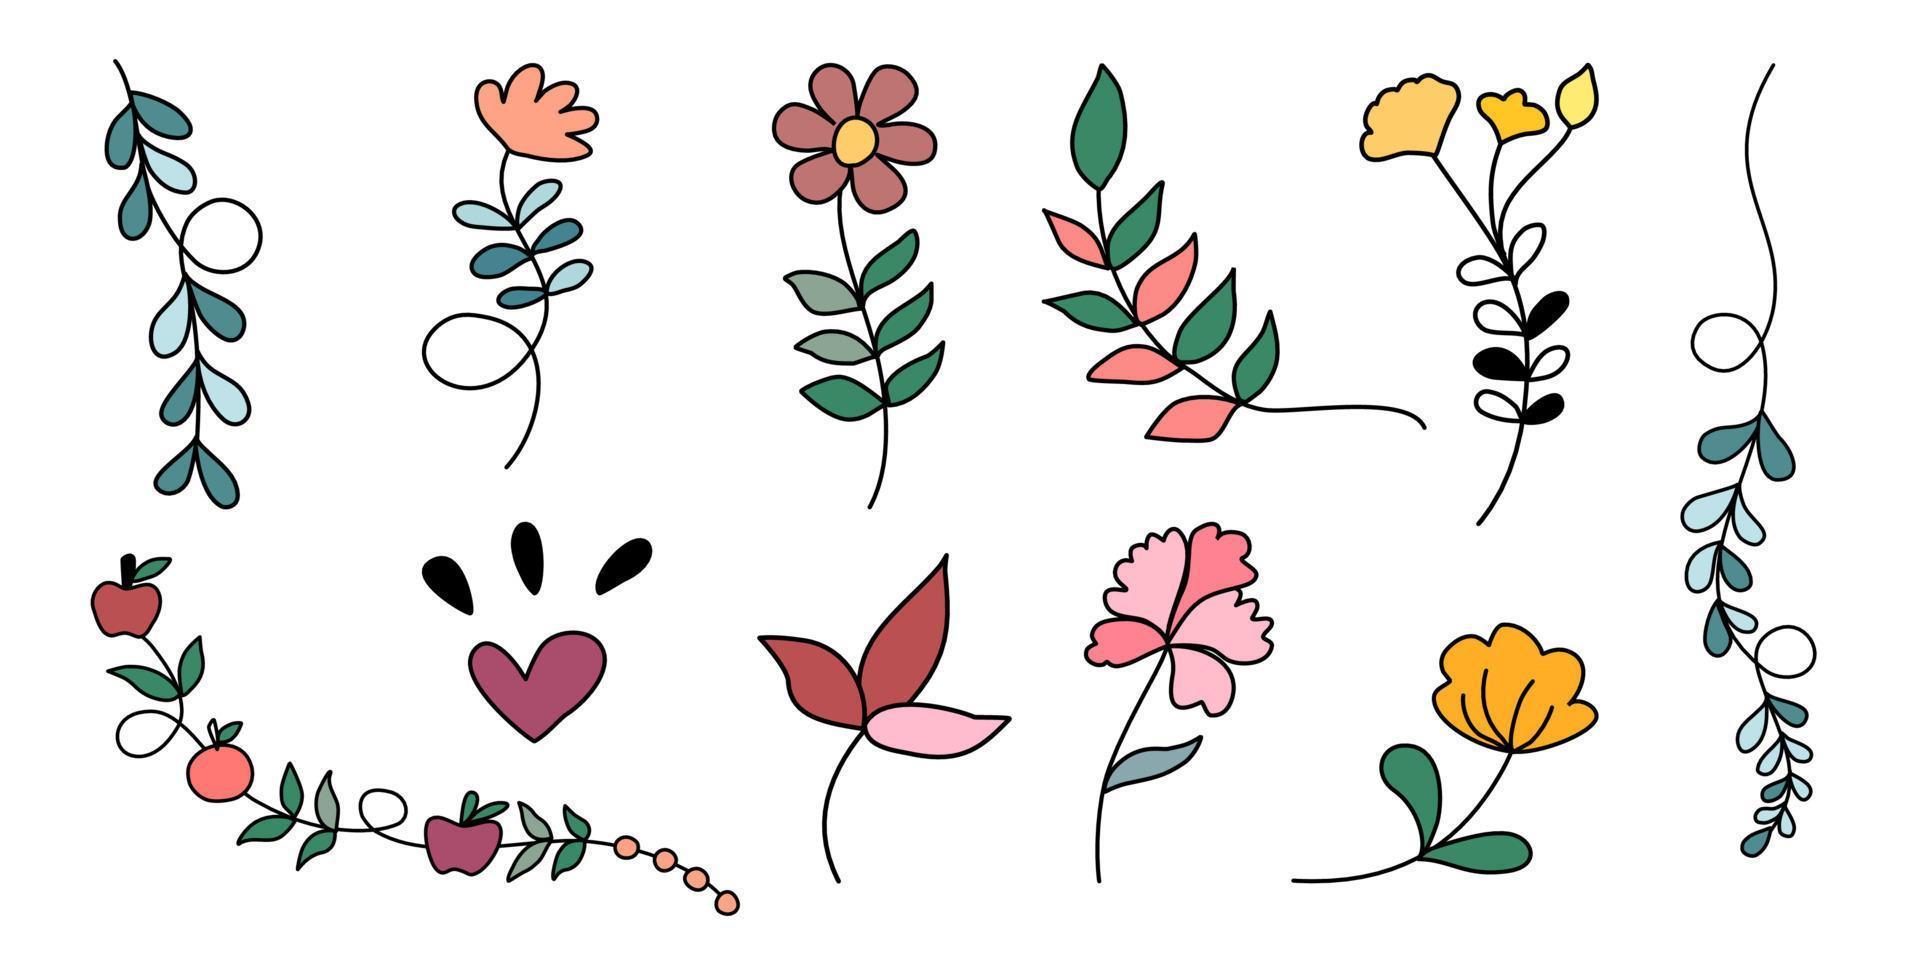 Vektor-Set Blumen- und Blattelemente im Doodle-Stil für Dekorationen, Karten, Digitaldrucke, Papiermuster, Bekleidungsmuster, Aufkleber, Kissen, Frühlingsdekorationen usw. vektor